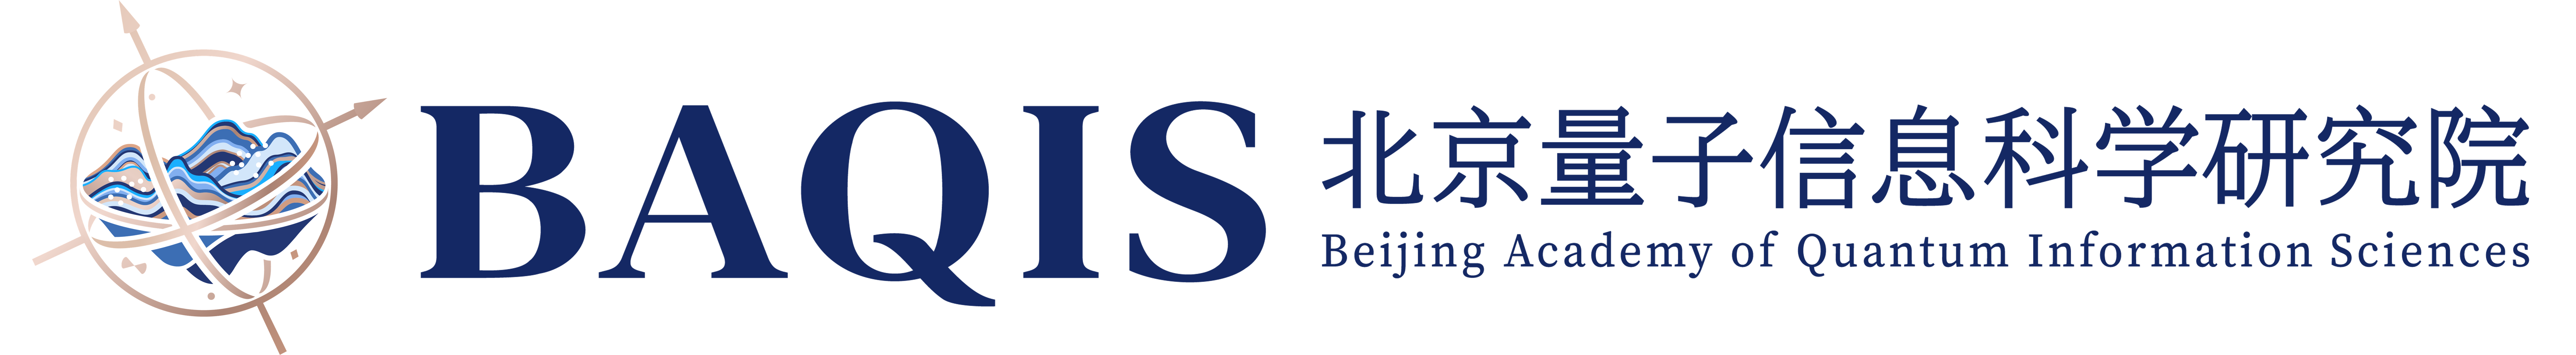 Beijing Academy of Quantum Information Sciences